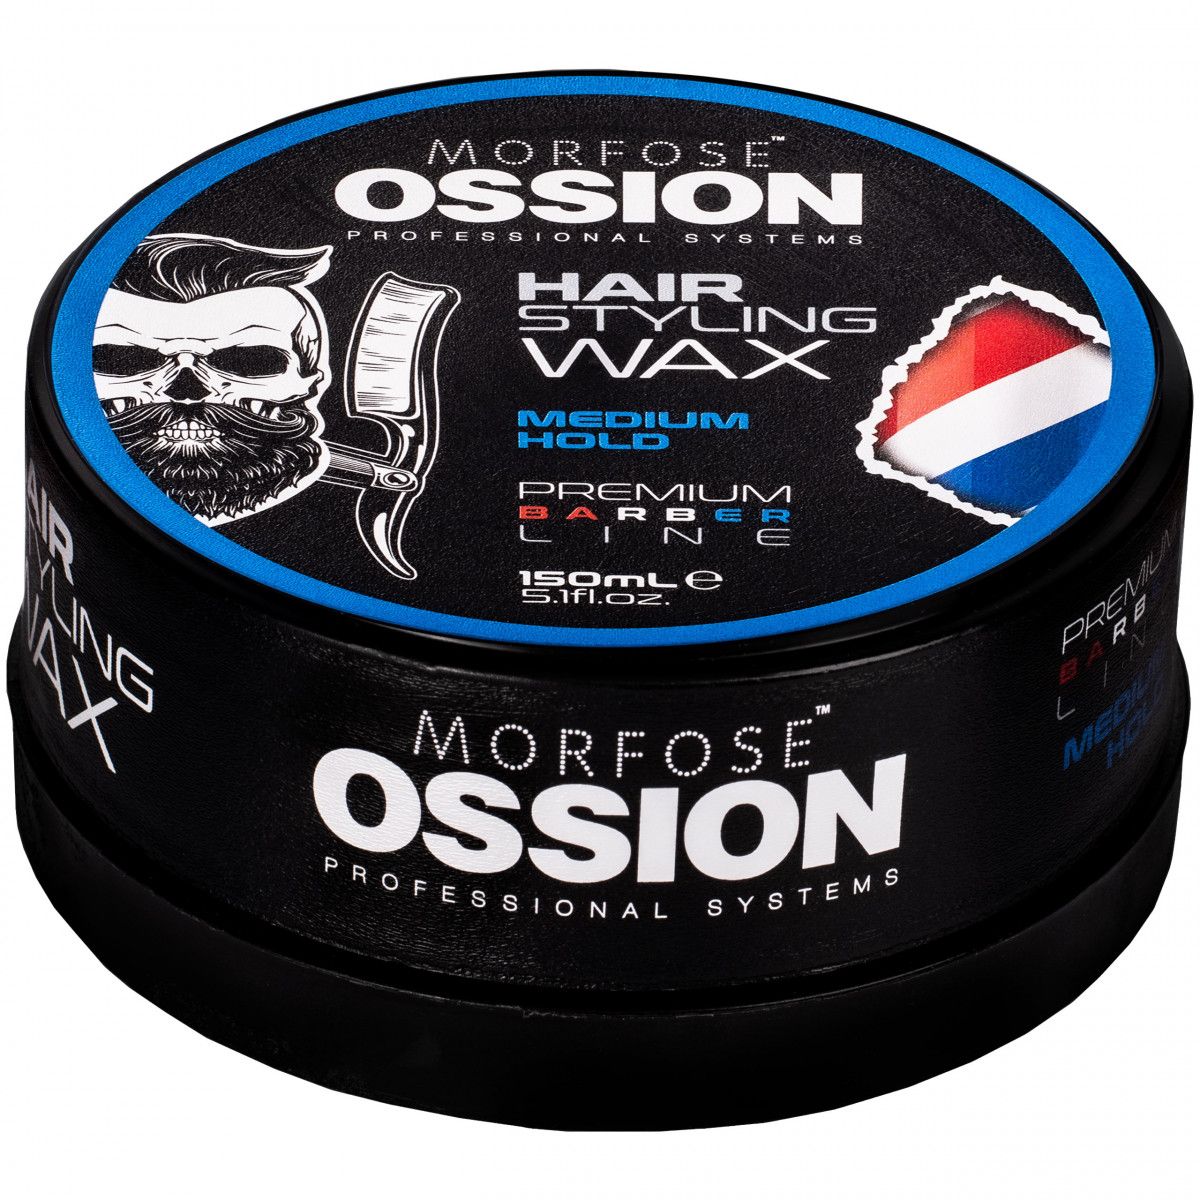 Morfose Ossion Hair Styling Wax Medium Hold – nabłyszczający wosk do stylizacji włosów, 150ml